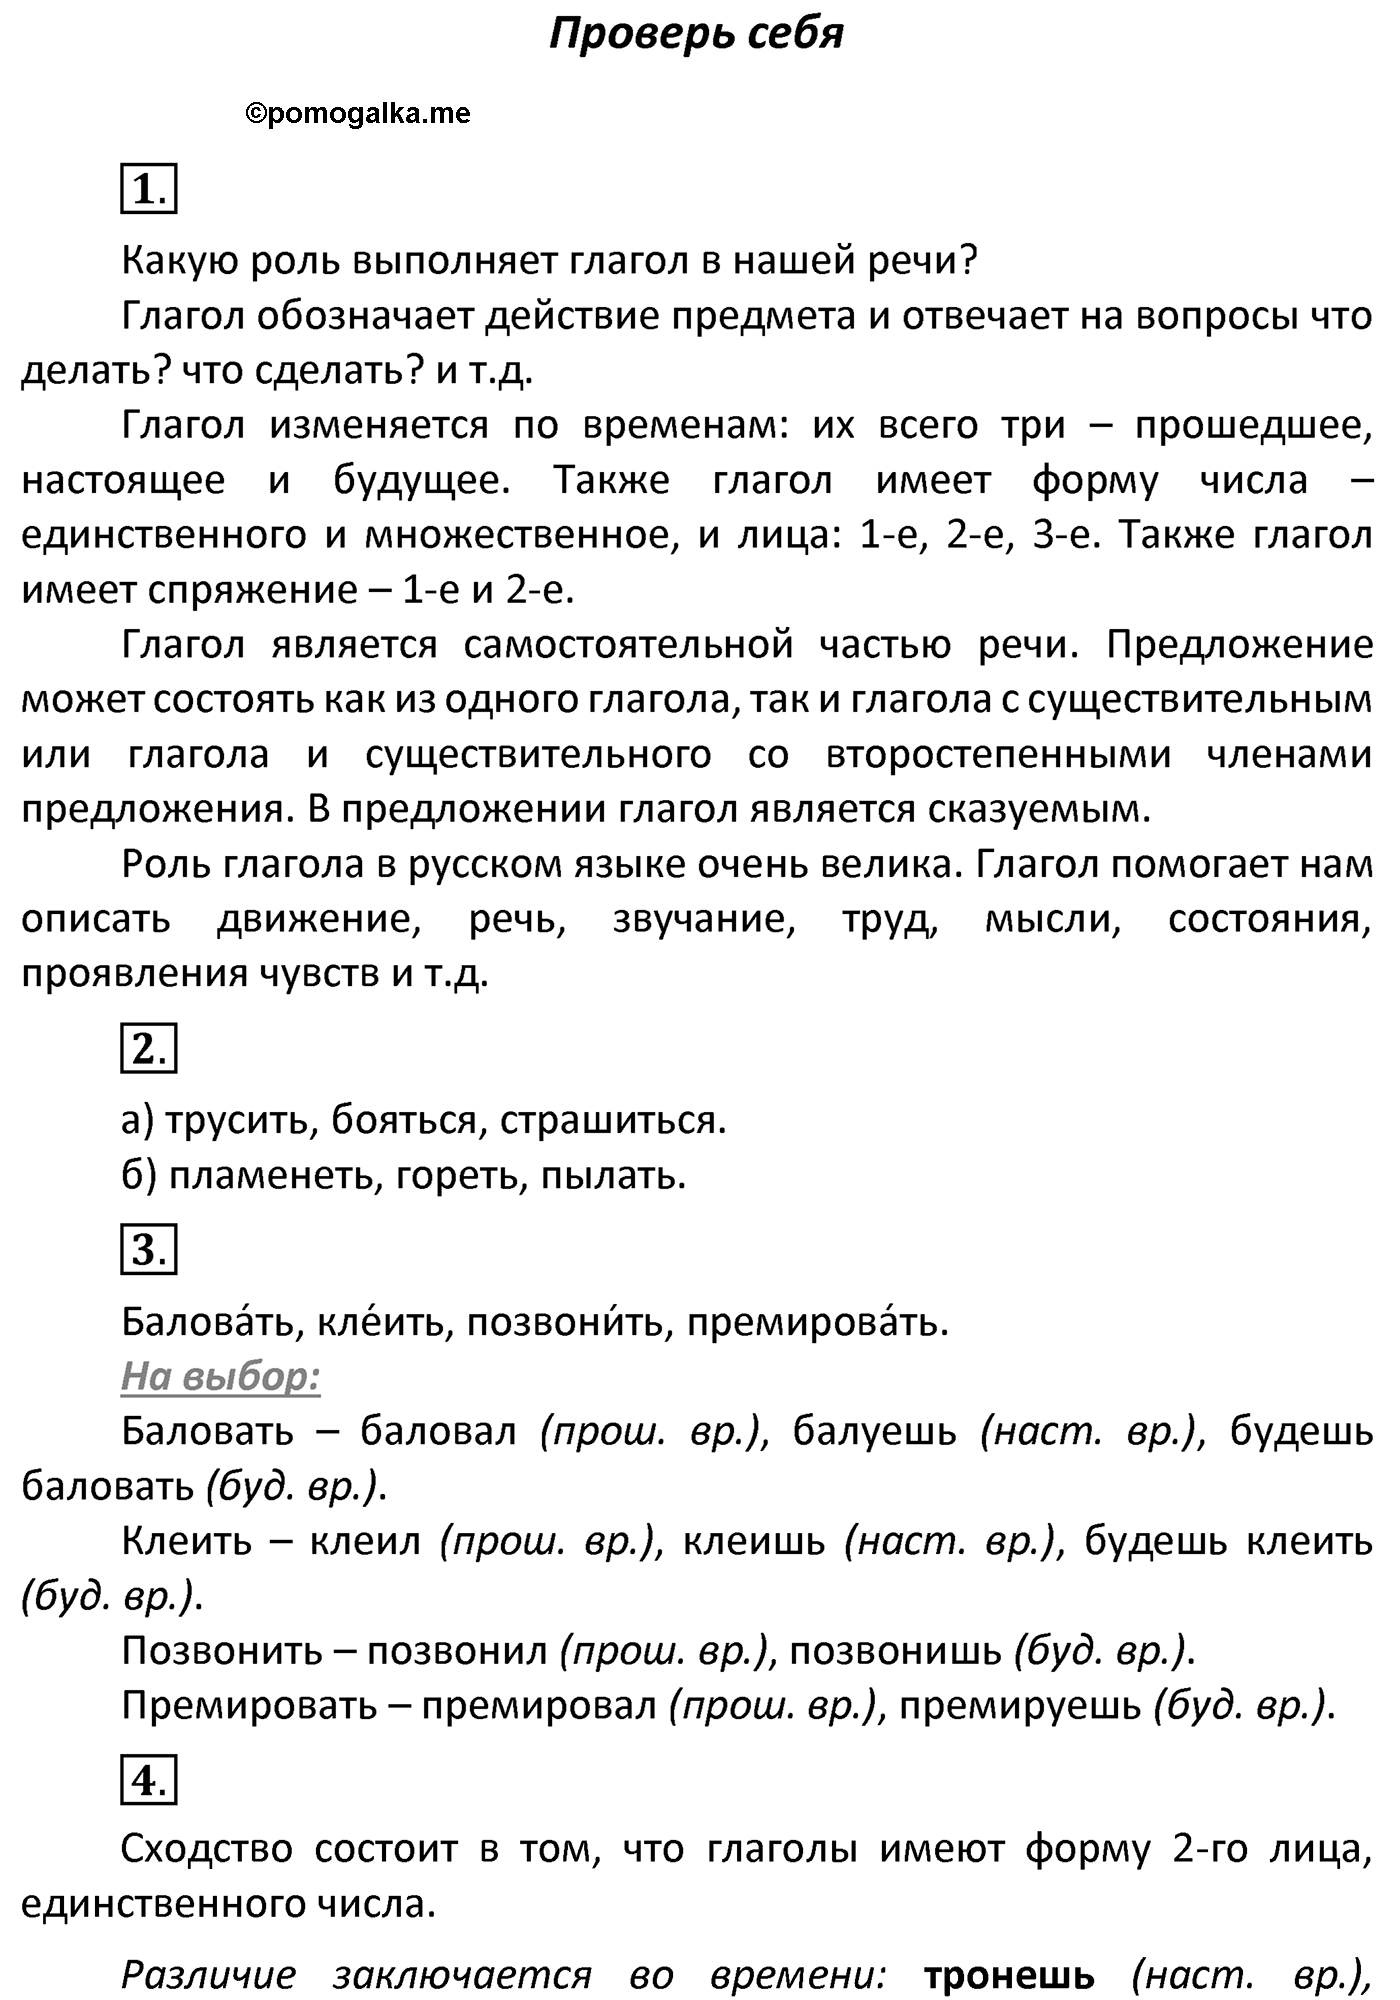 часть 2 страница 120 Проверь себя русский язык 4 класс Канакина 2022 год